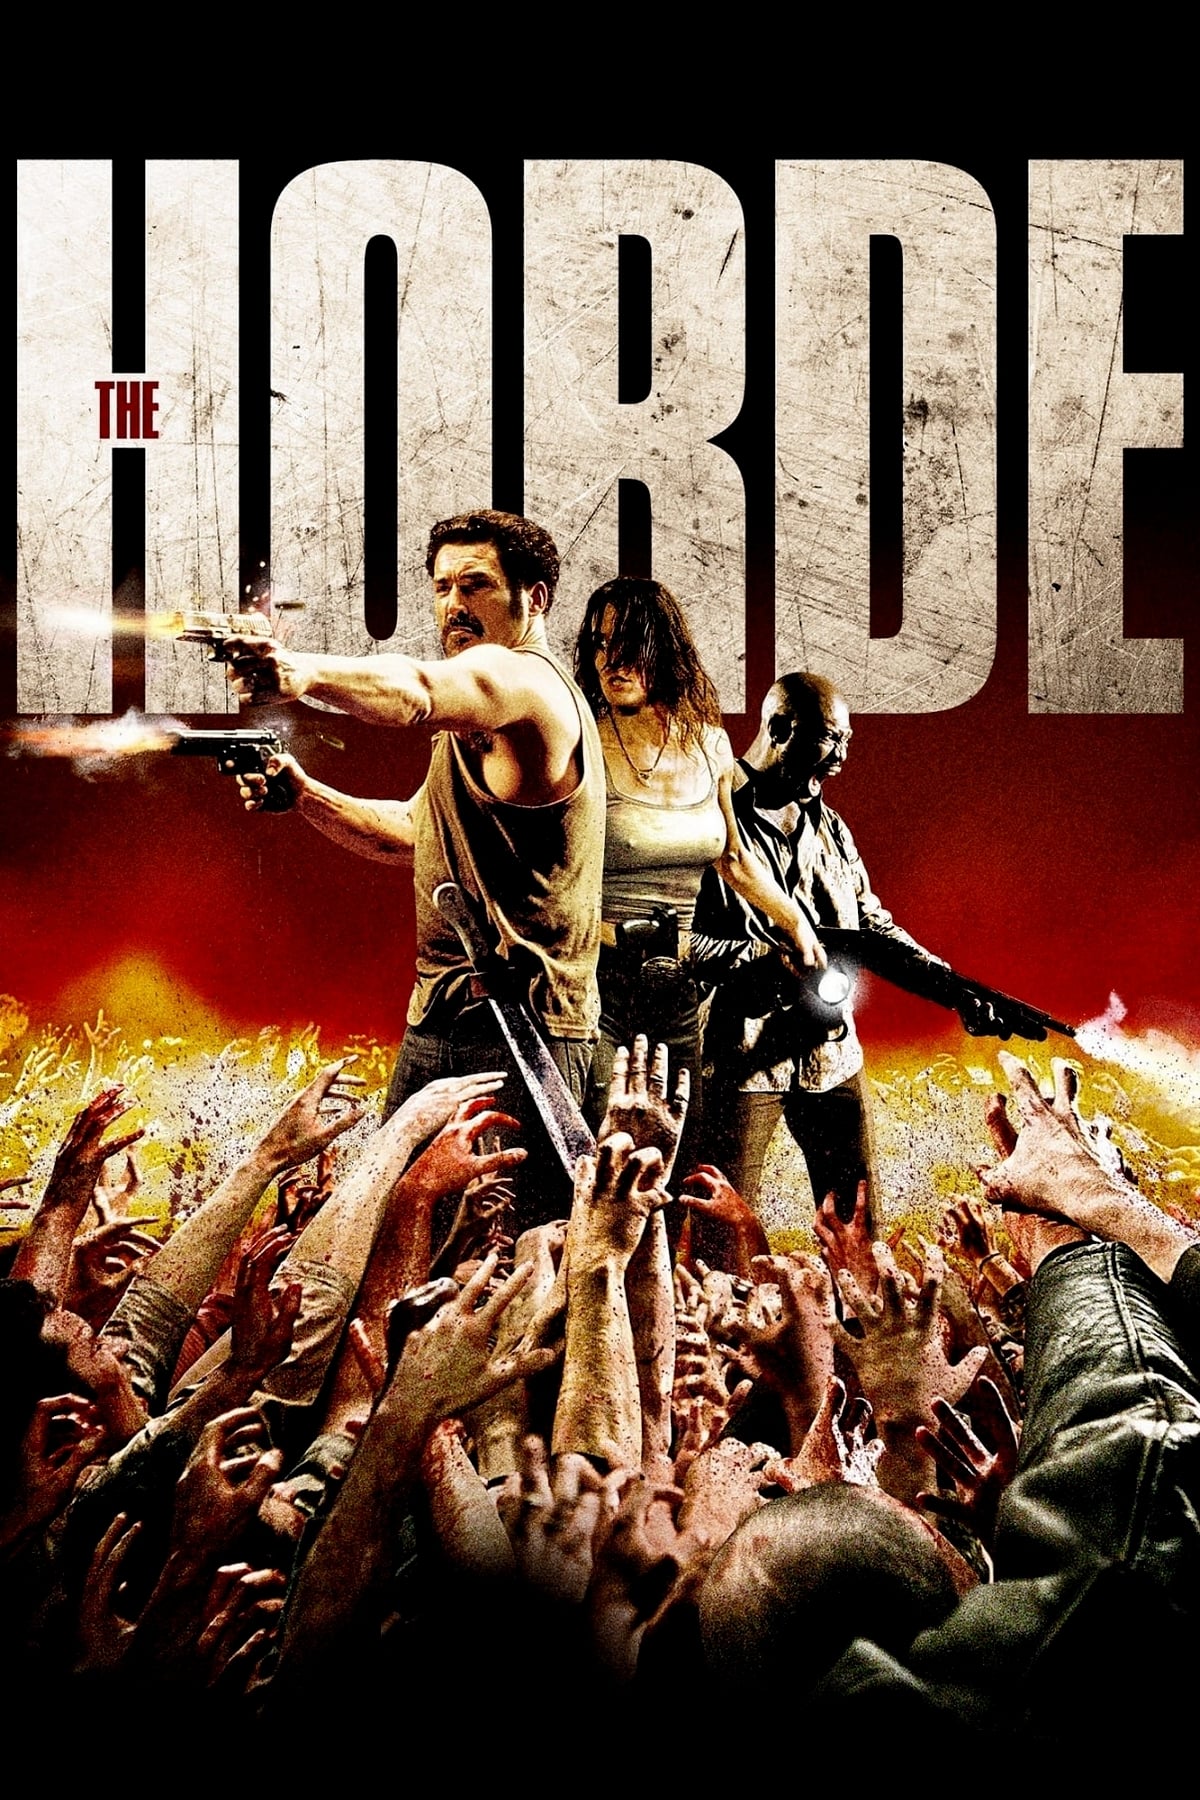 The Horde [HD] (2010)